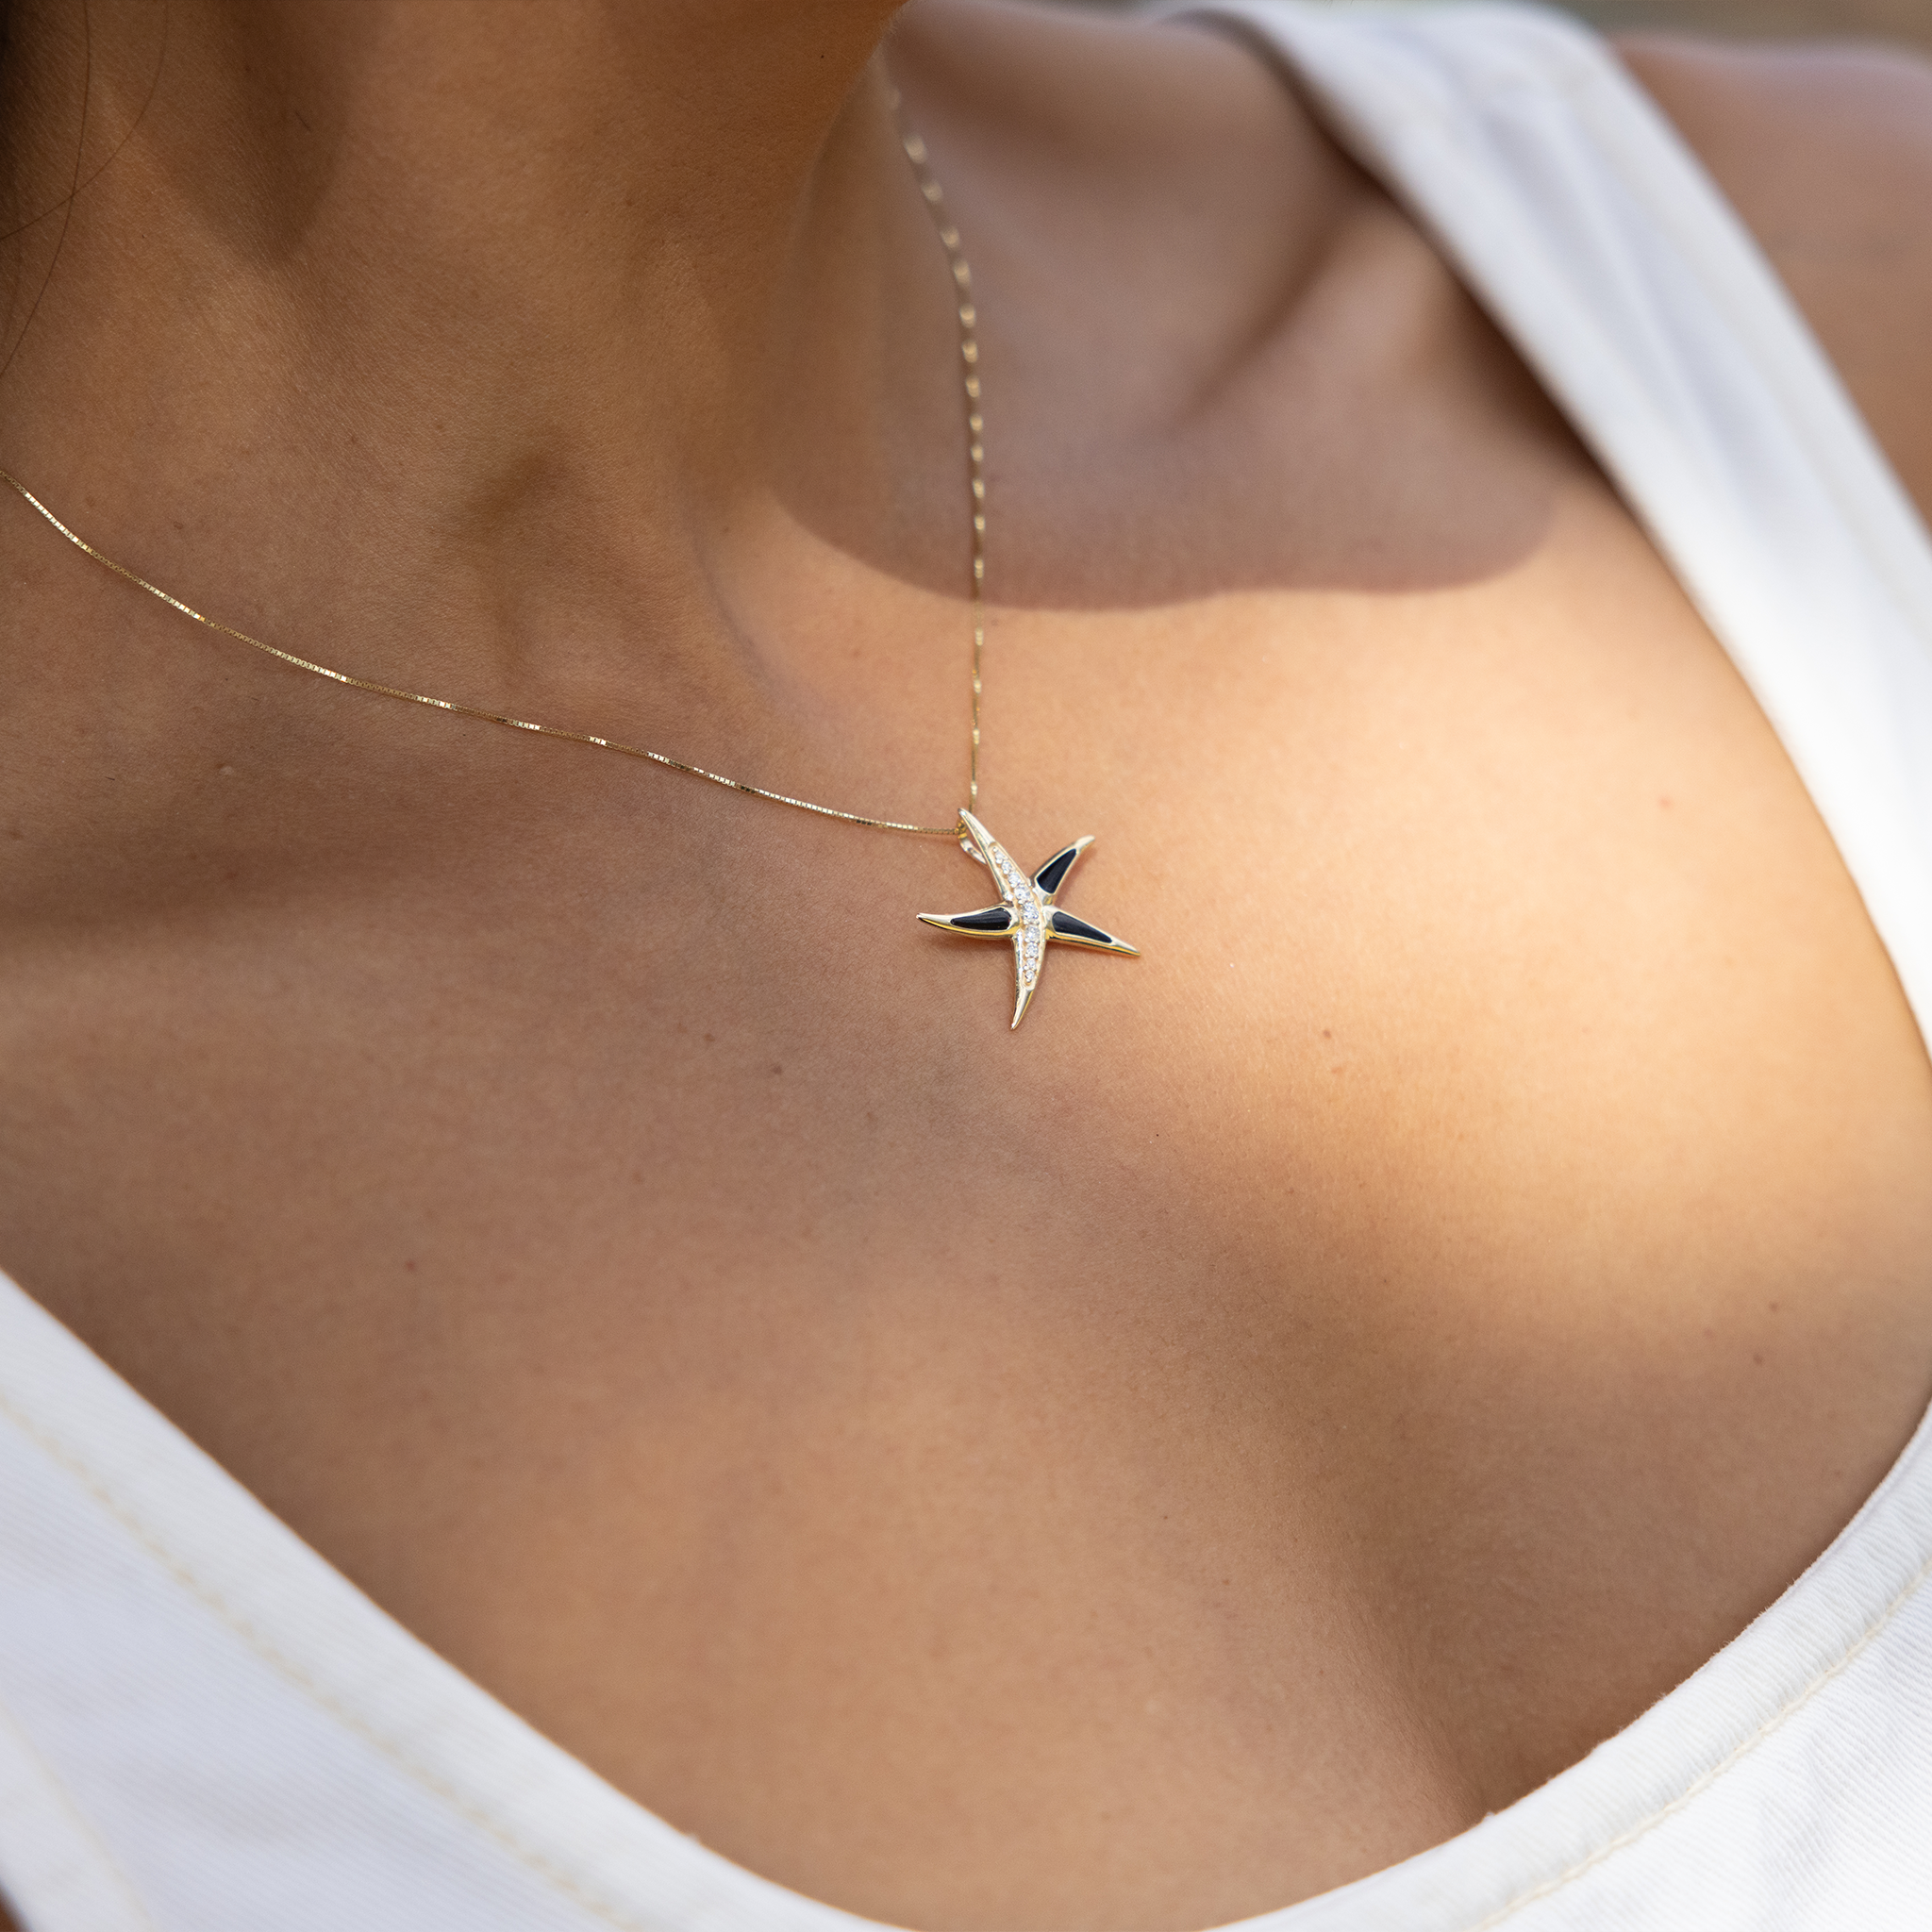 SEALLIFE étoile de mer le pendentif corail noir en or avec des diamants - 23 mm